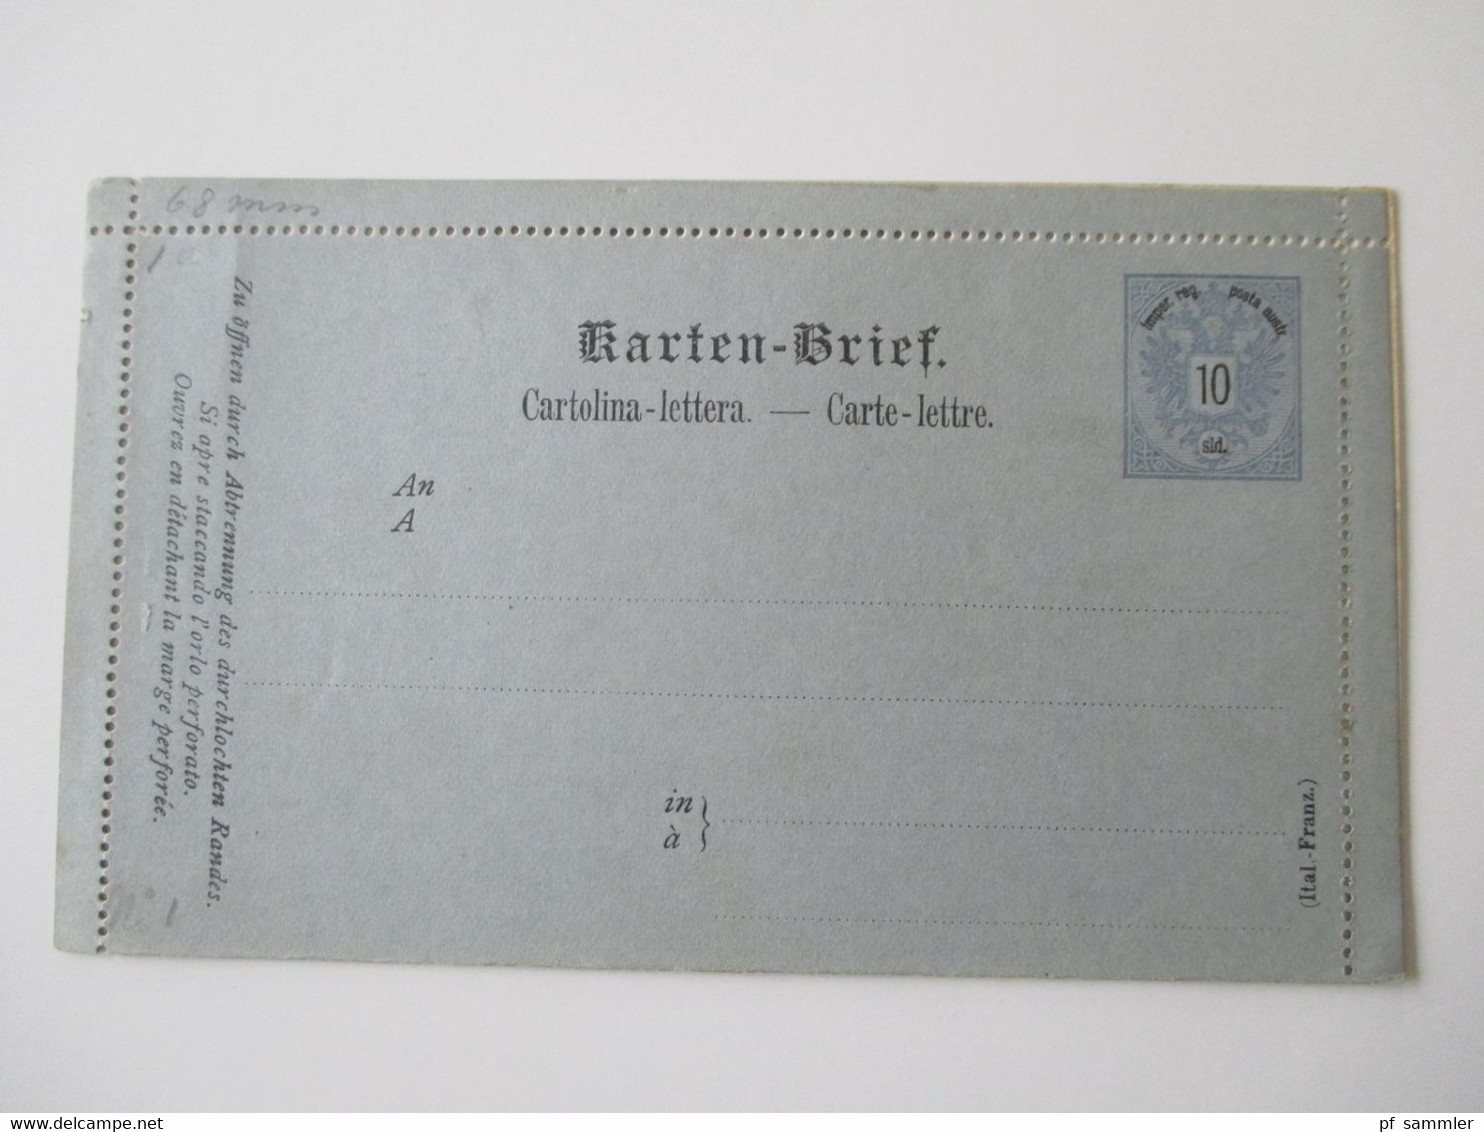 Österreich Levante ab 1883 Ganzsachen / Kartenbriefe / 2x Doppelkarte alles ungebraucht! Insgesamt 11 Stück